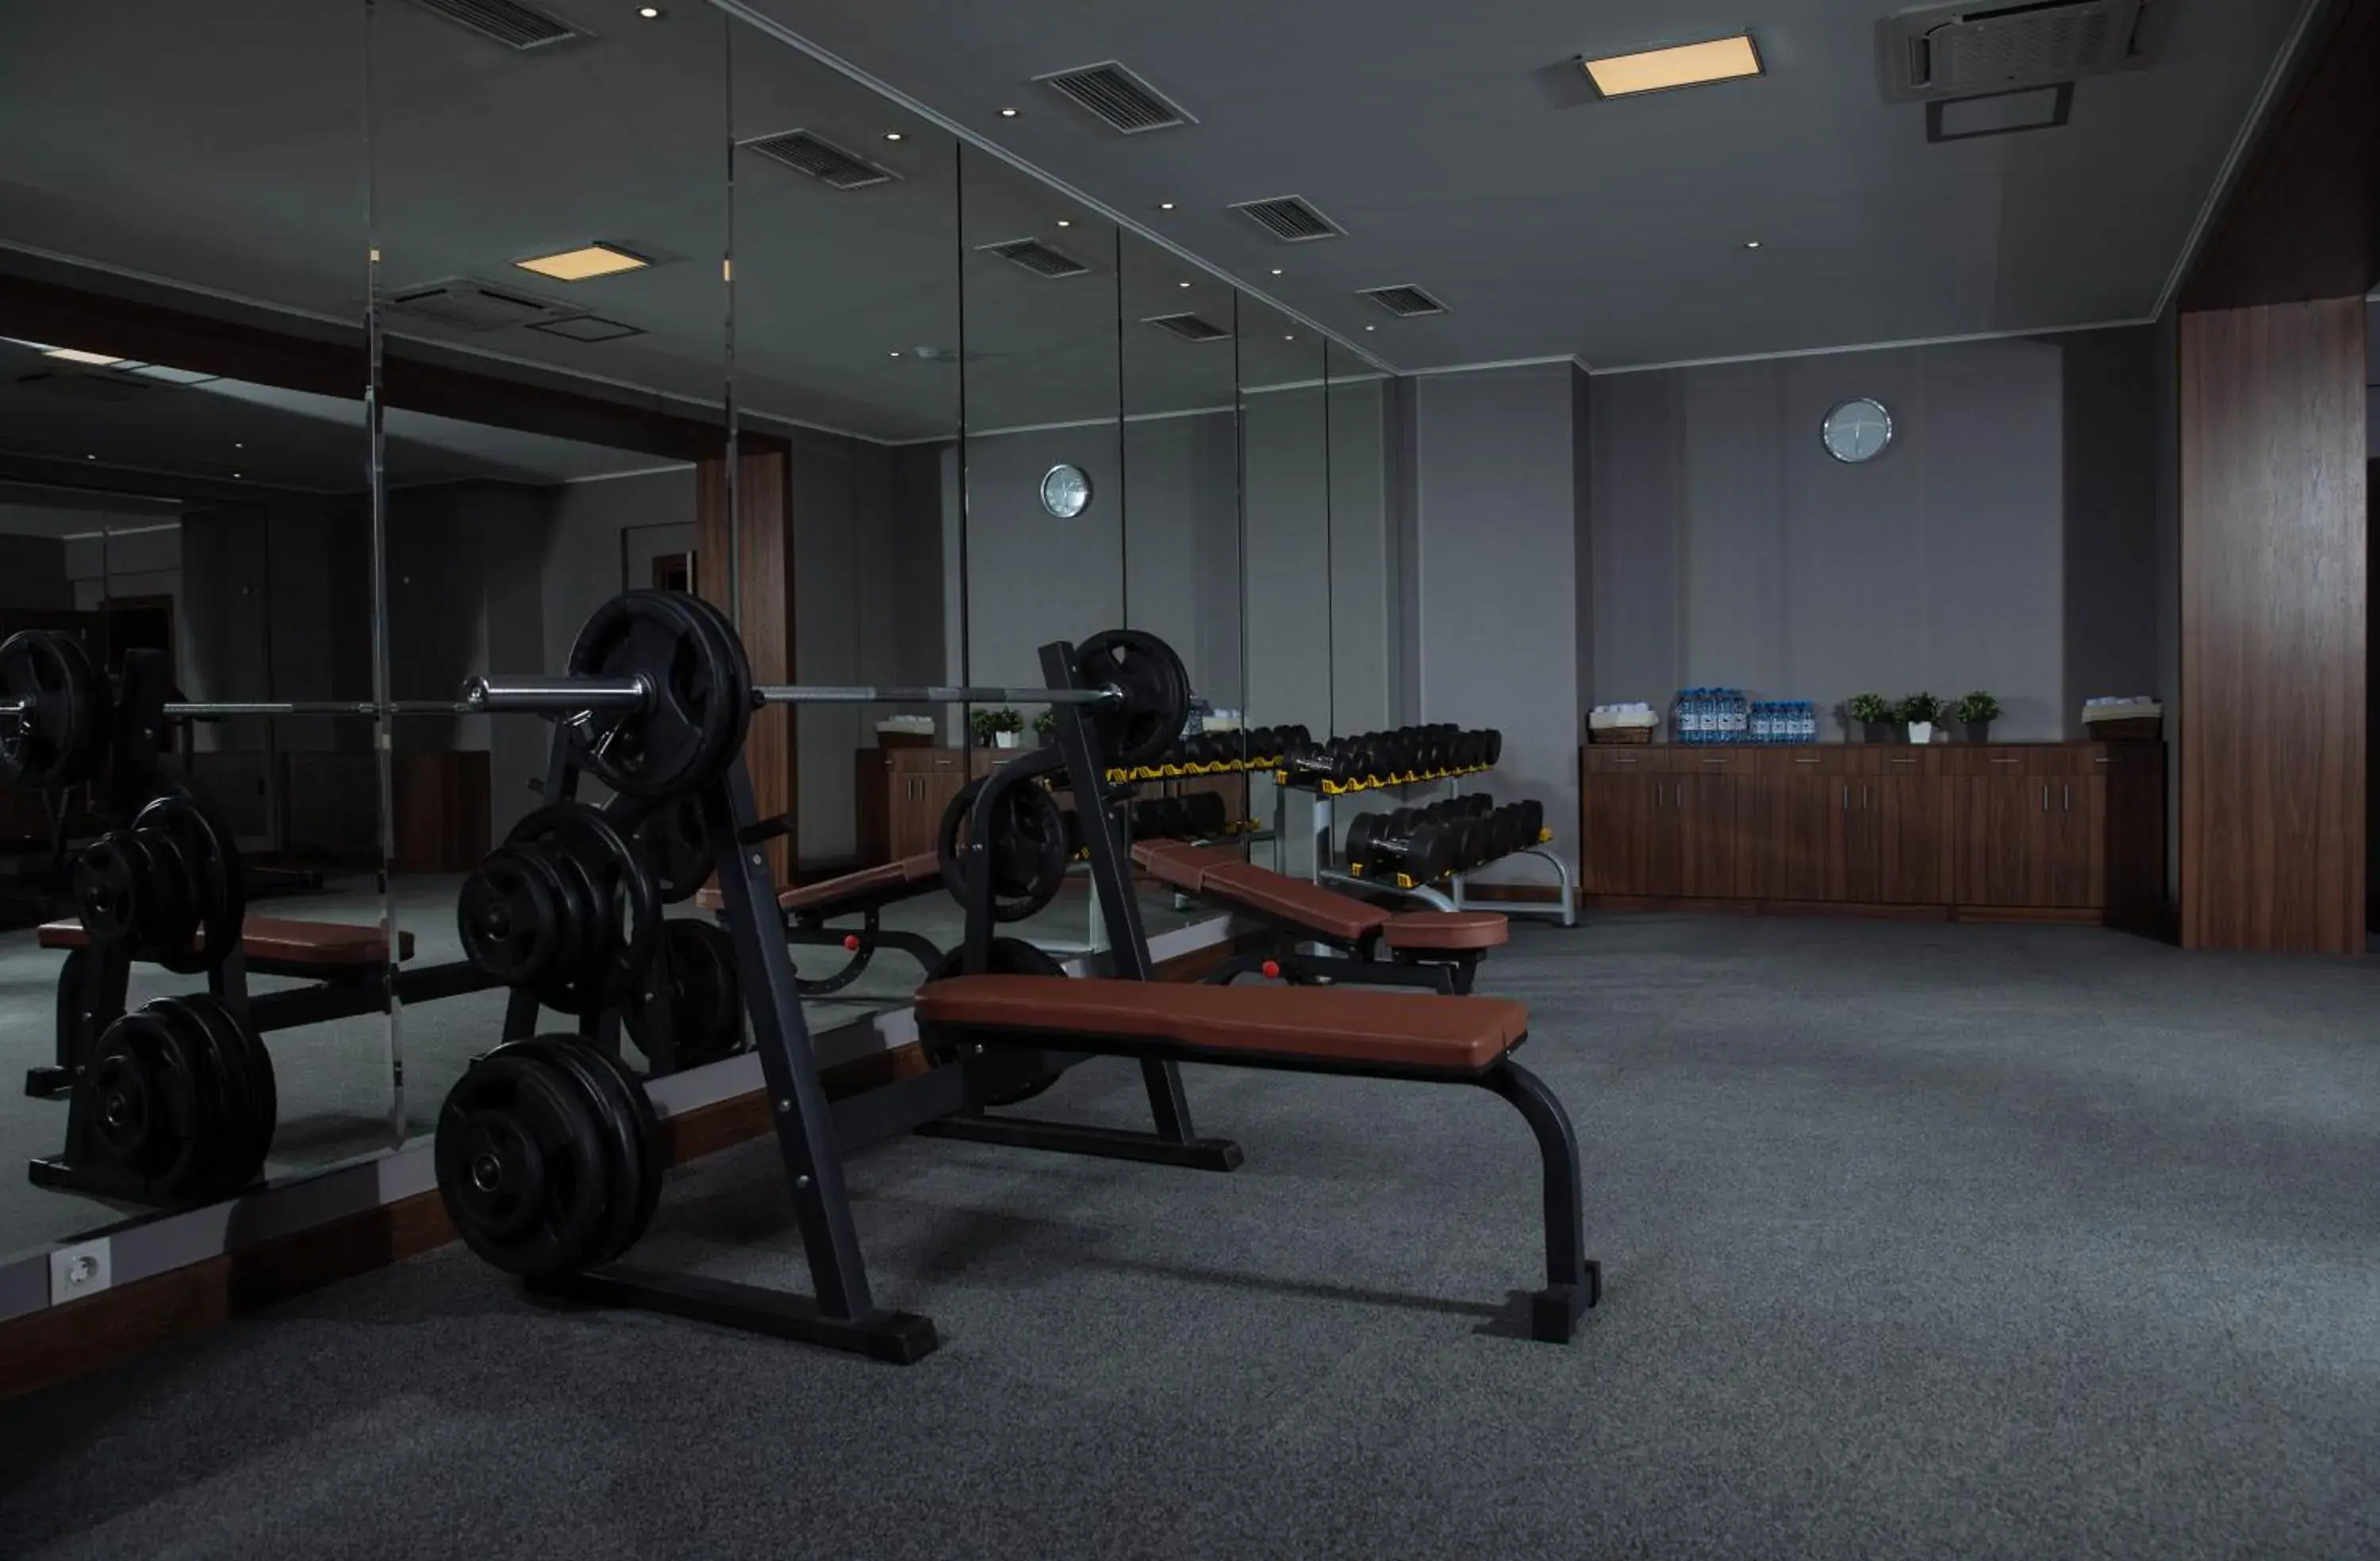 Fitness centre/facilities, Fitness Center/Facilities in Garden Park Inn